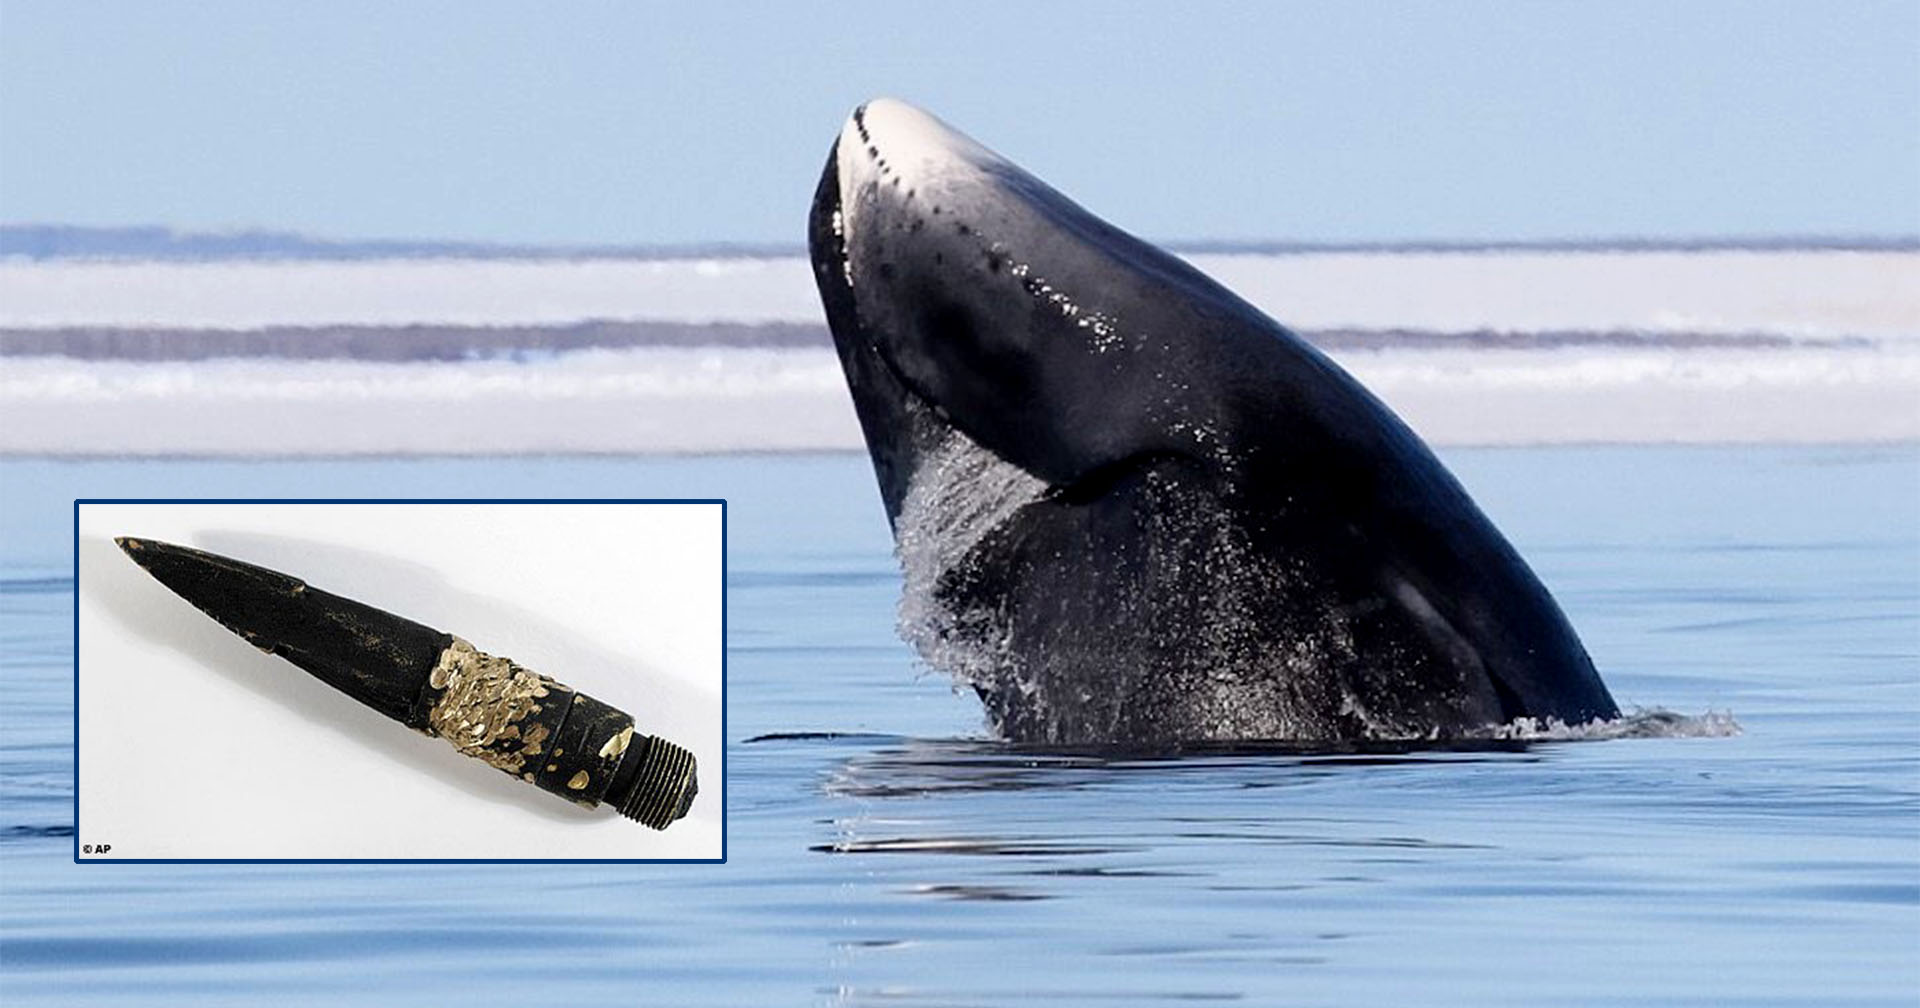 ชาวเอสกิโมล่าวาฬหัวศร แต่เจอหัวฉมวกอายุกว่า 100 ปีฝังอยู่ในร่าง